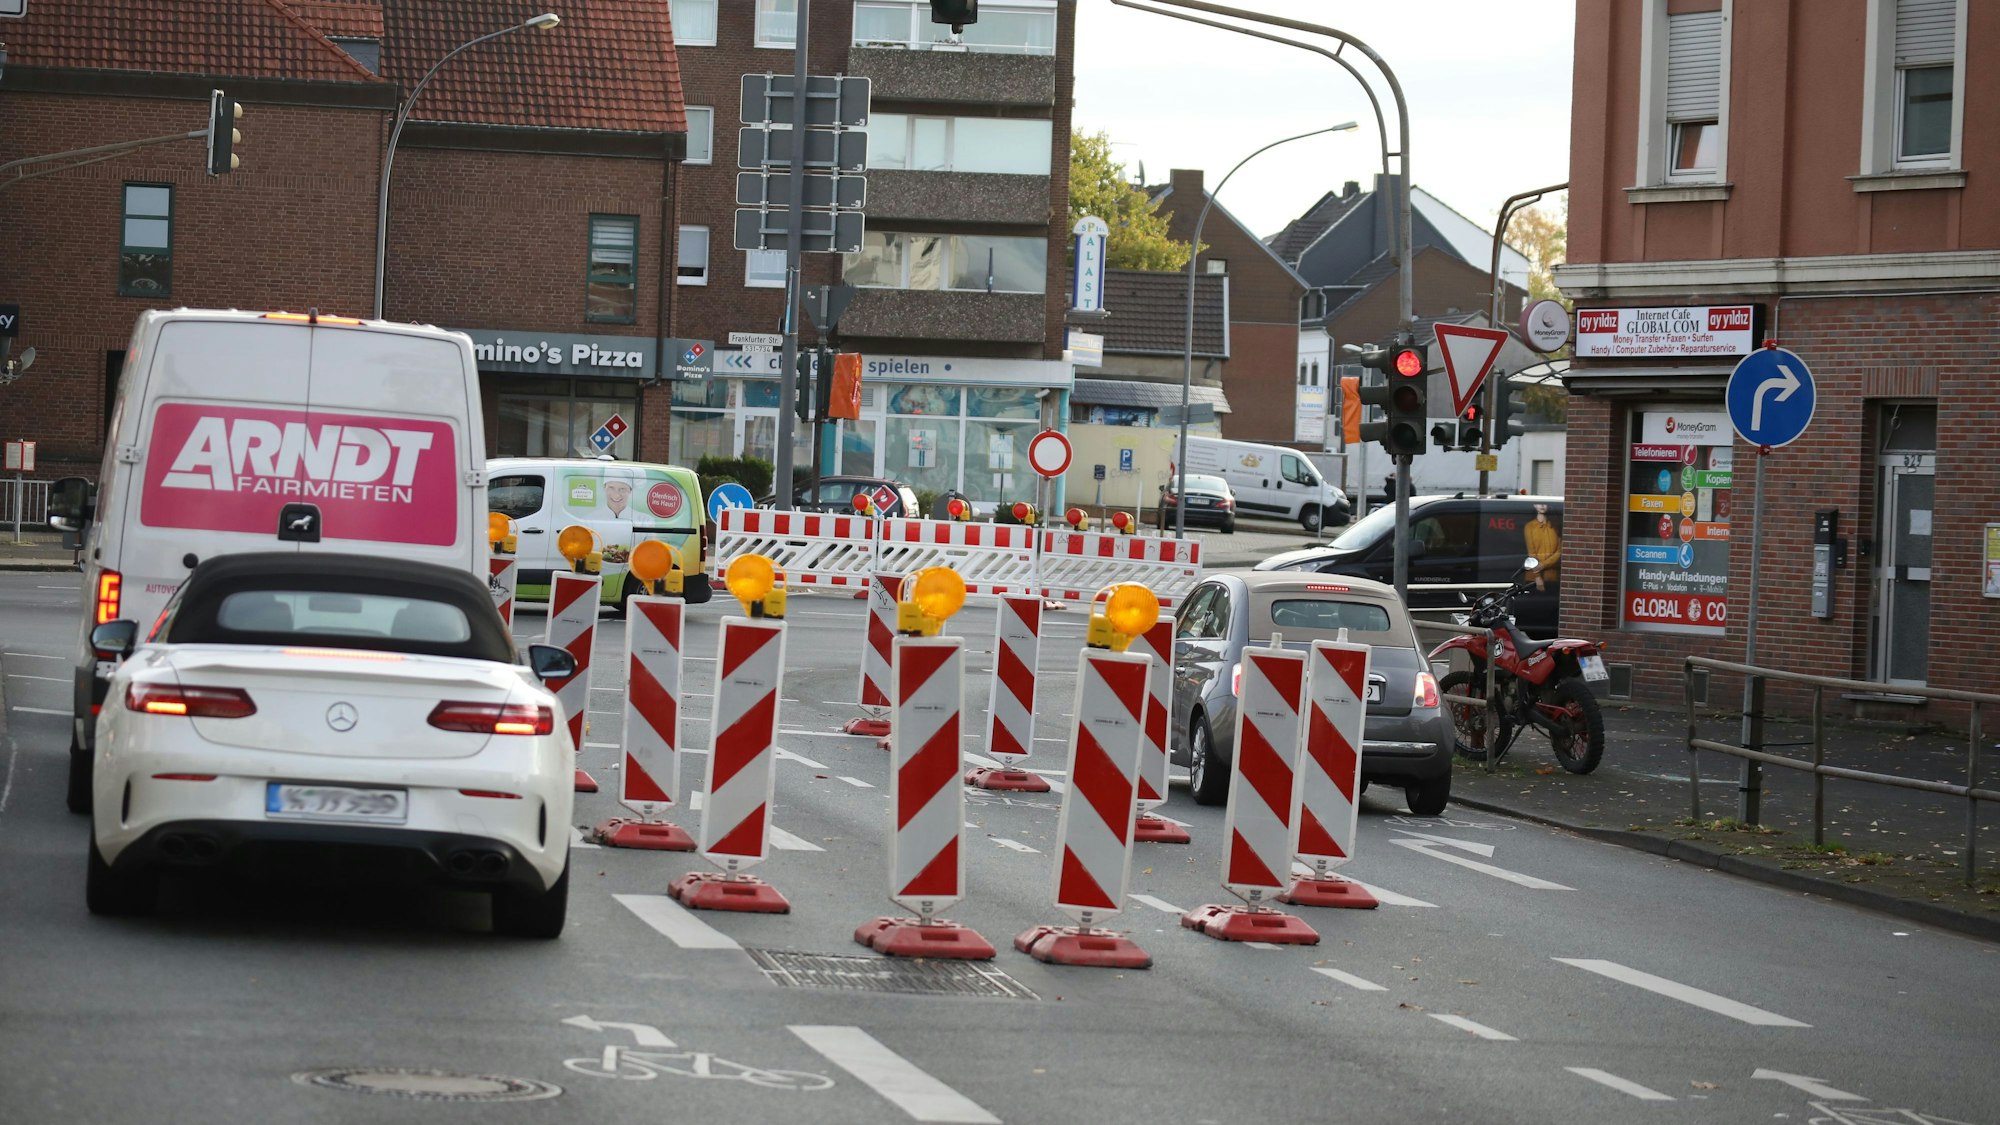 Die Einfahrt in die Kölner Waldstraße ist von der großen Kreuzung in Urbach (Frankfurter Straße/Kaiserstraße/Waldstraße) für mehrere Monate nicht möglich. Der Energieversorger Rheinenergie erneuert Stromkabel. Drei Autos stehen an einer roten Ampel. Auf dem mittleren der drei Fahrstreifen ist eine Baustelle.